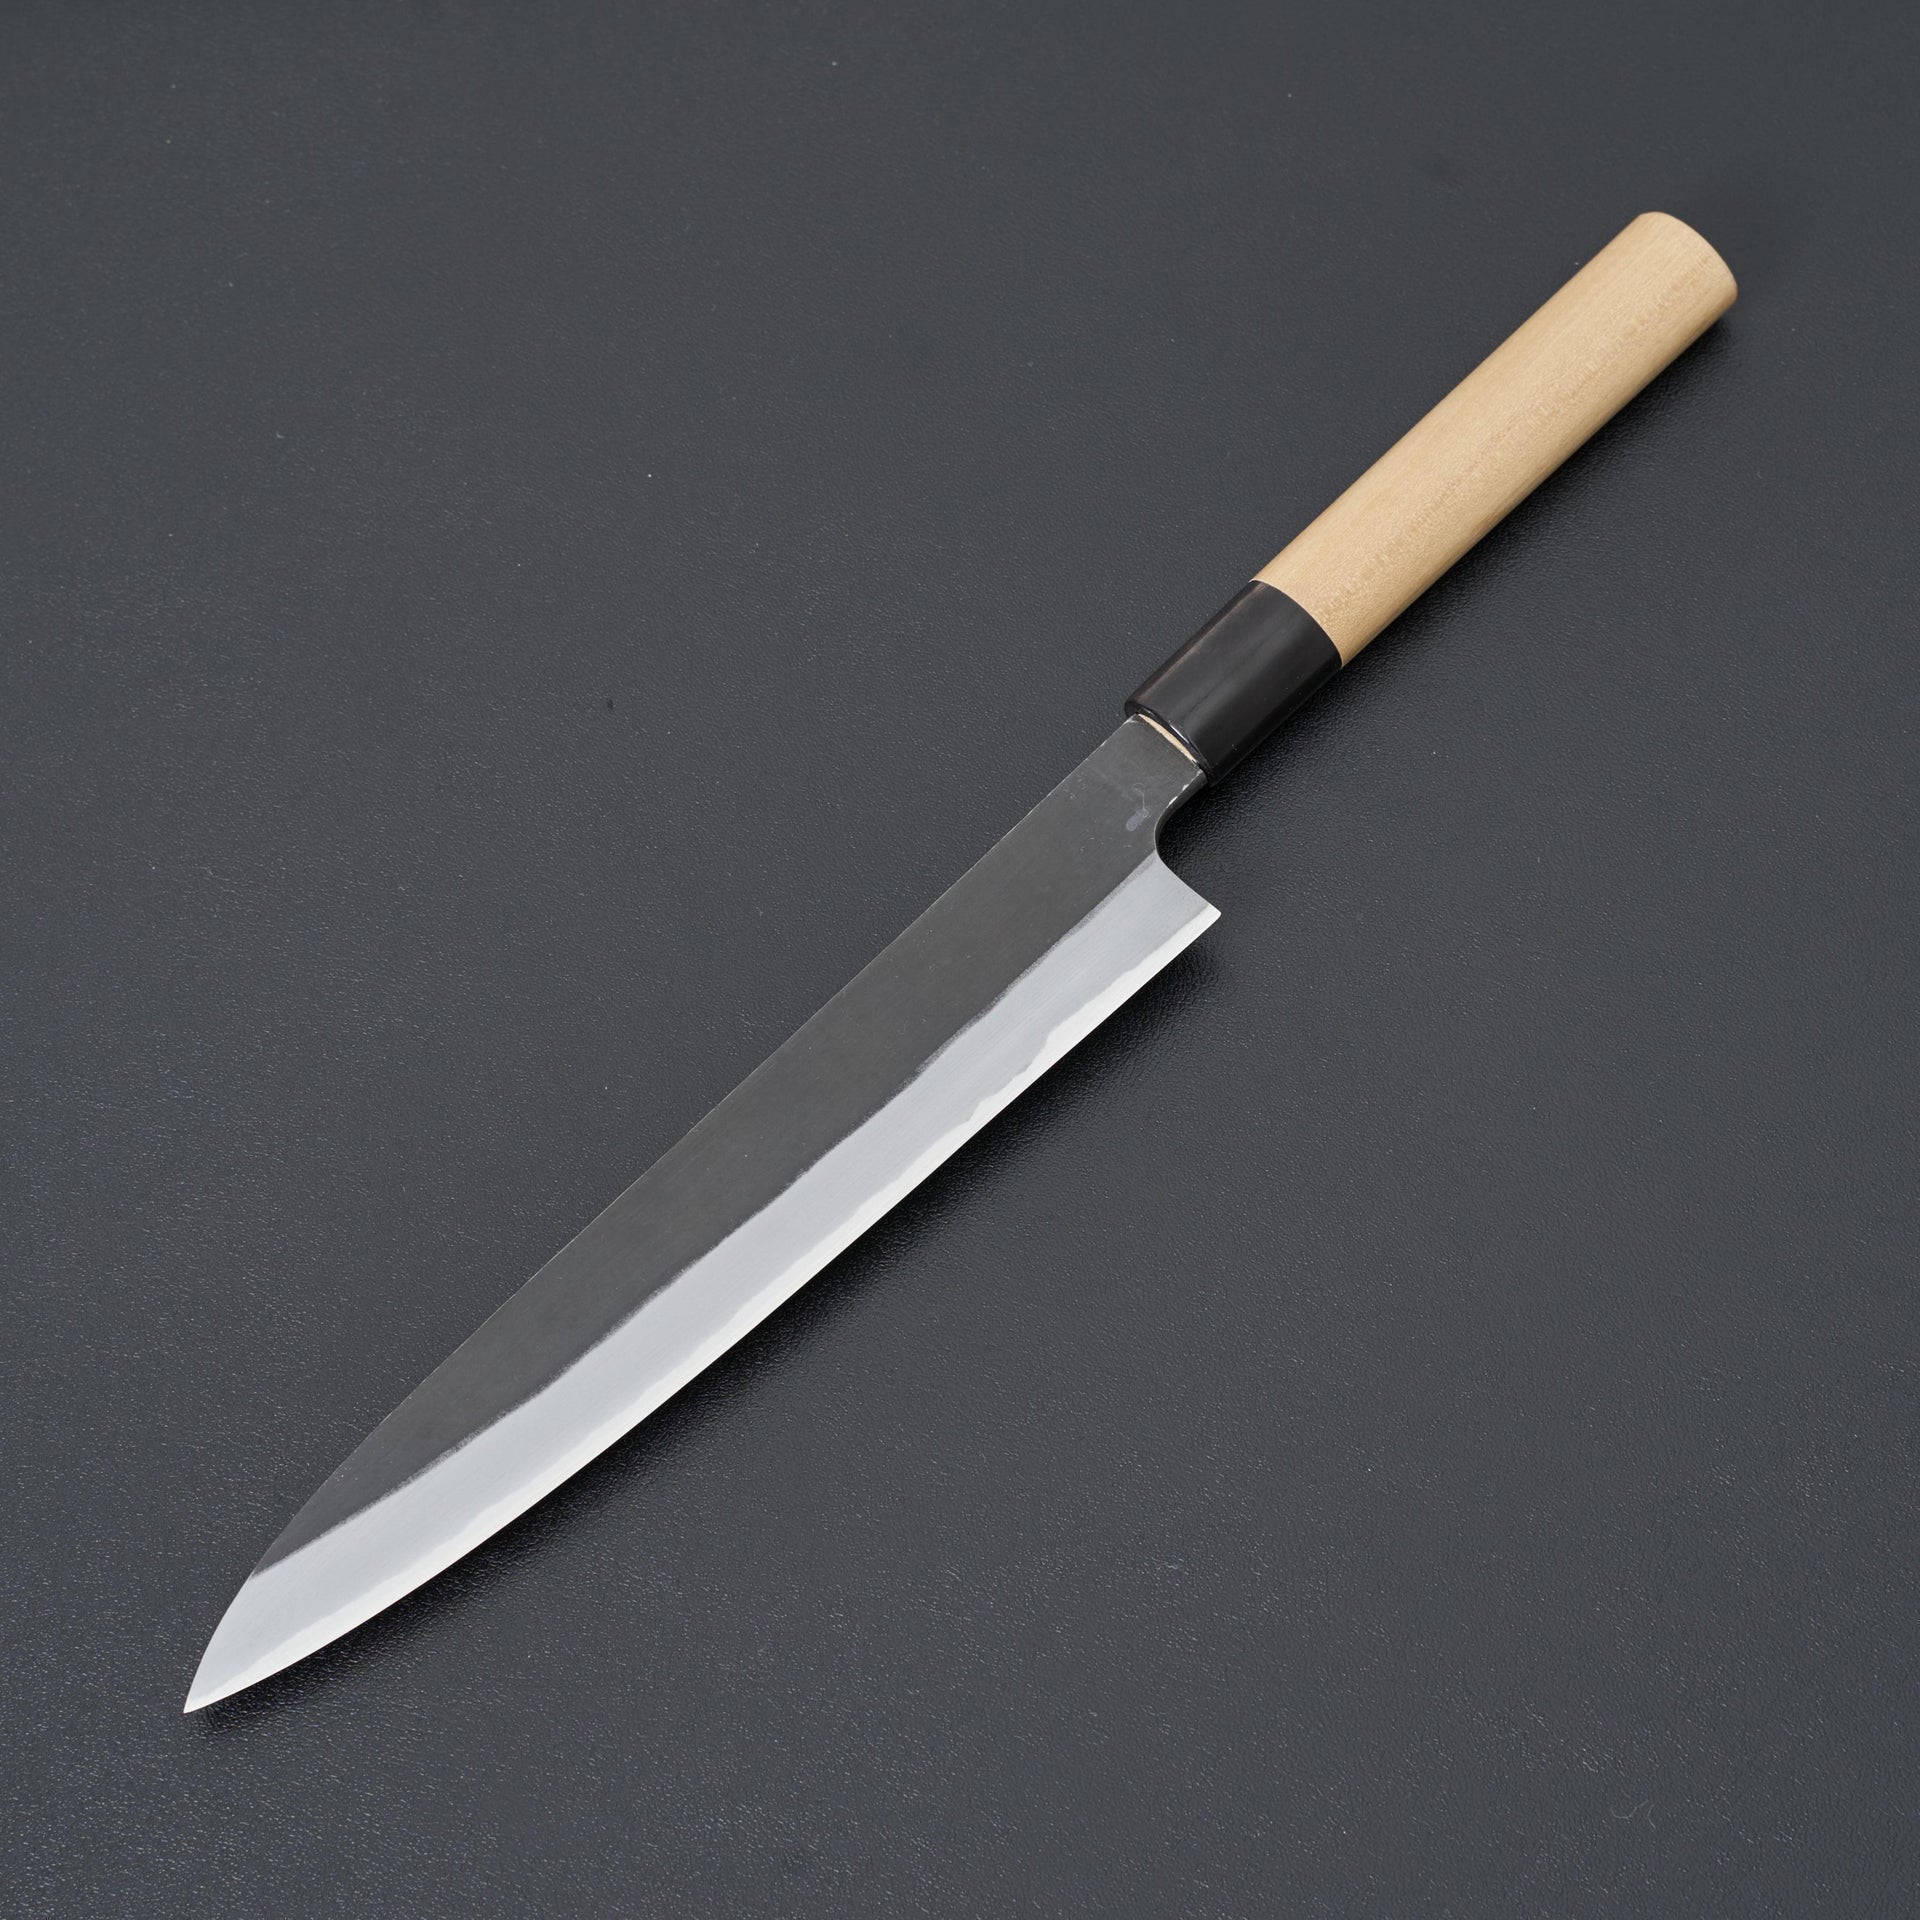 Hinoura Ajikataya Shirogami 2 Kurouchi Petty 210mm-Knife-Hinoura-Carbon Knife Co